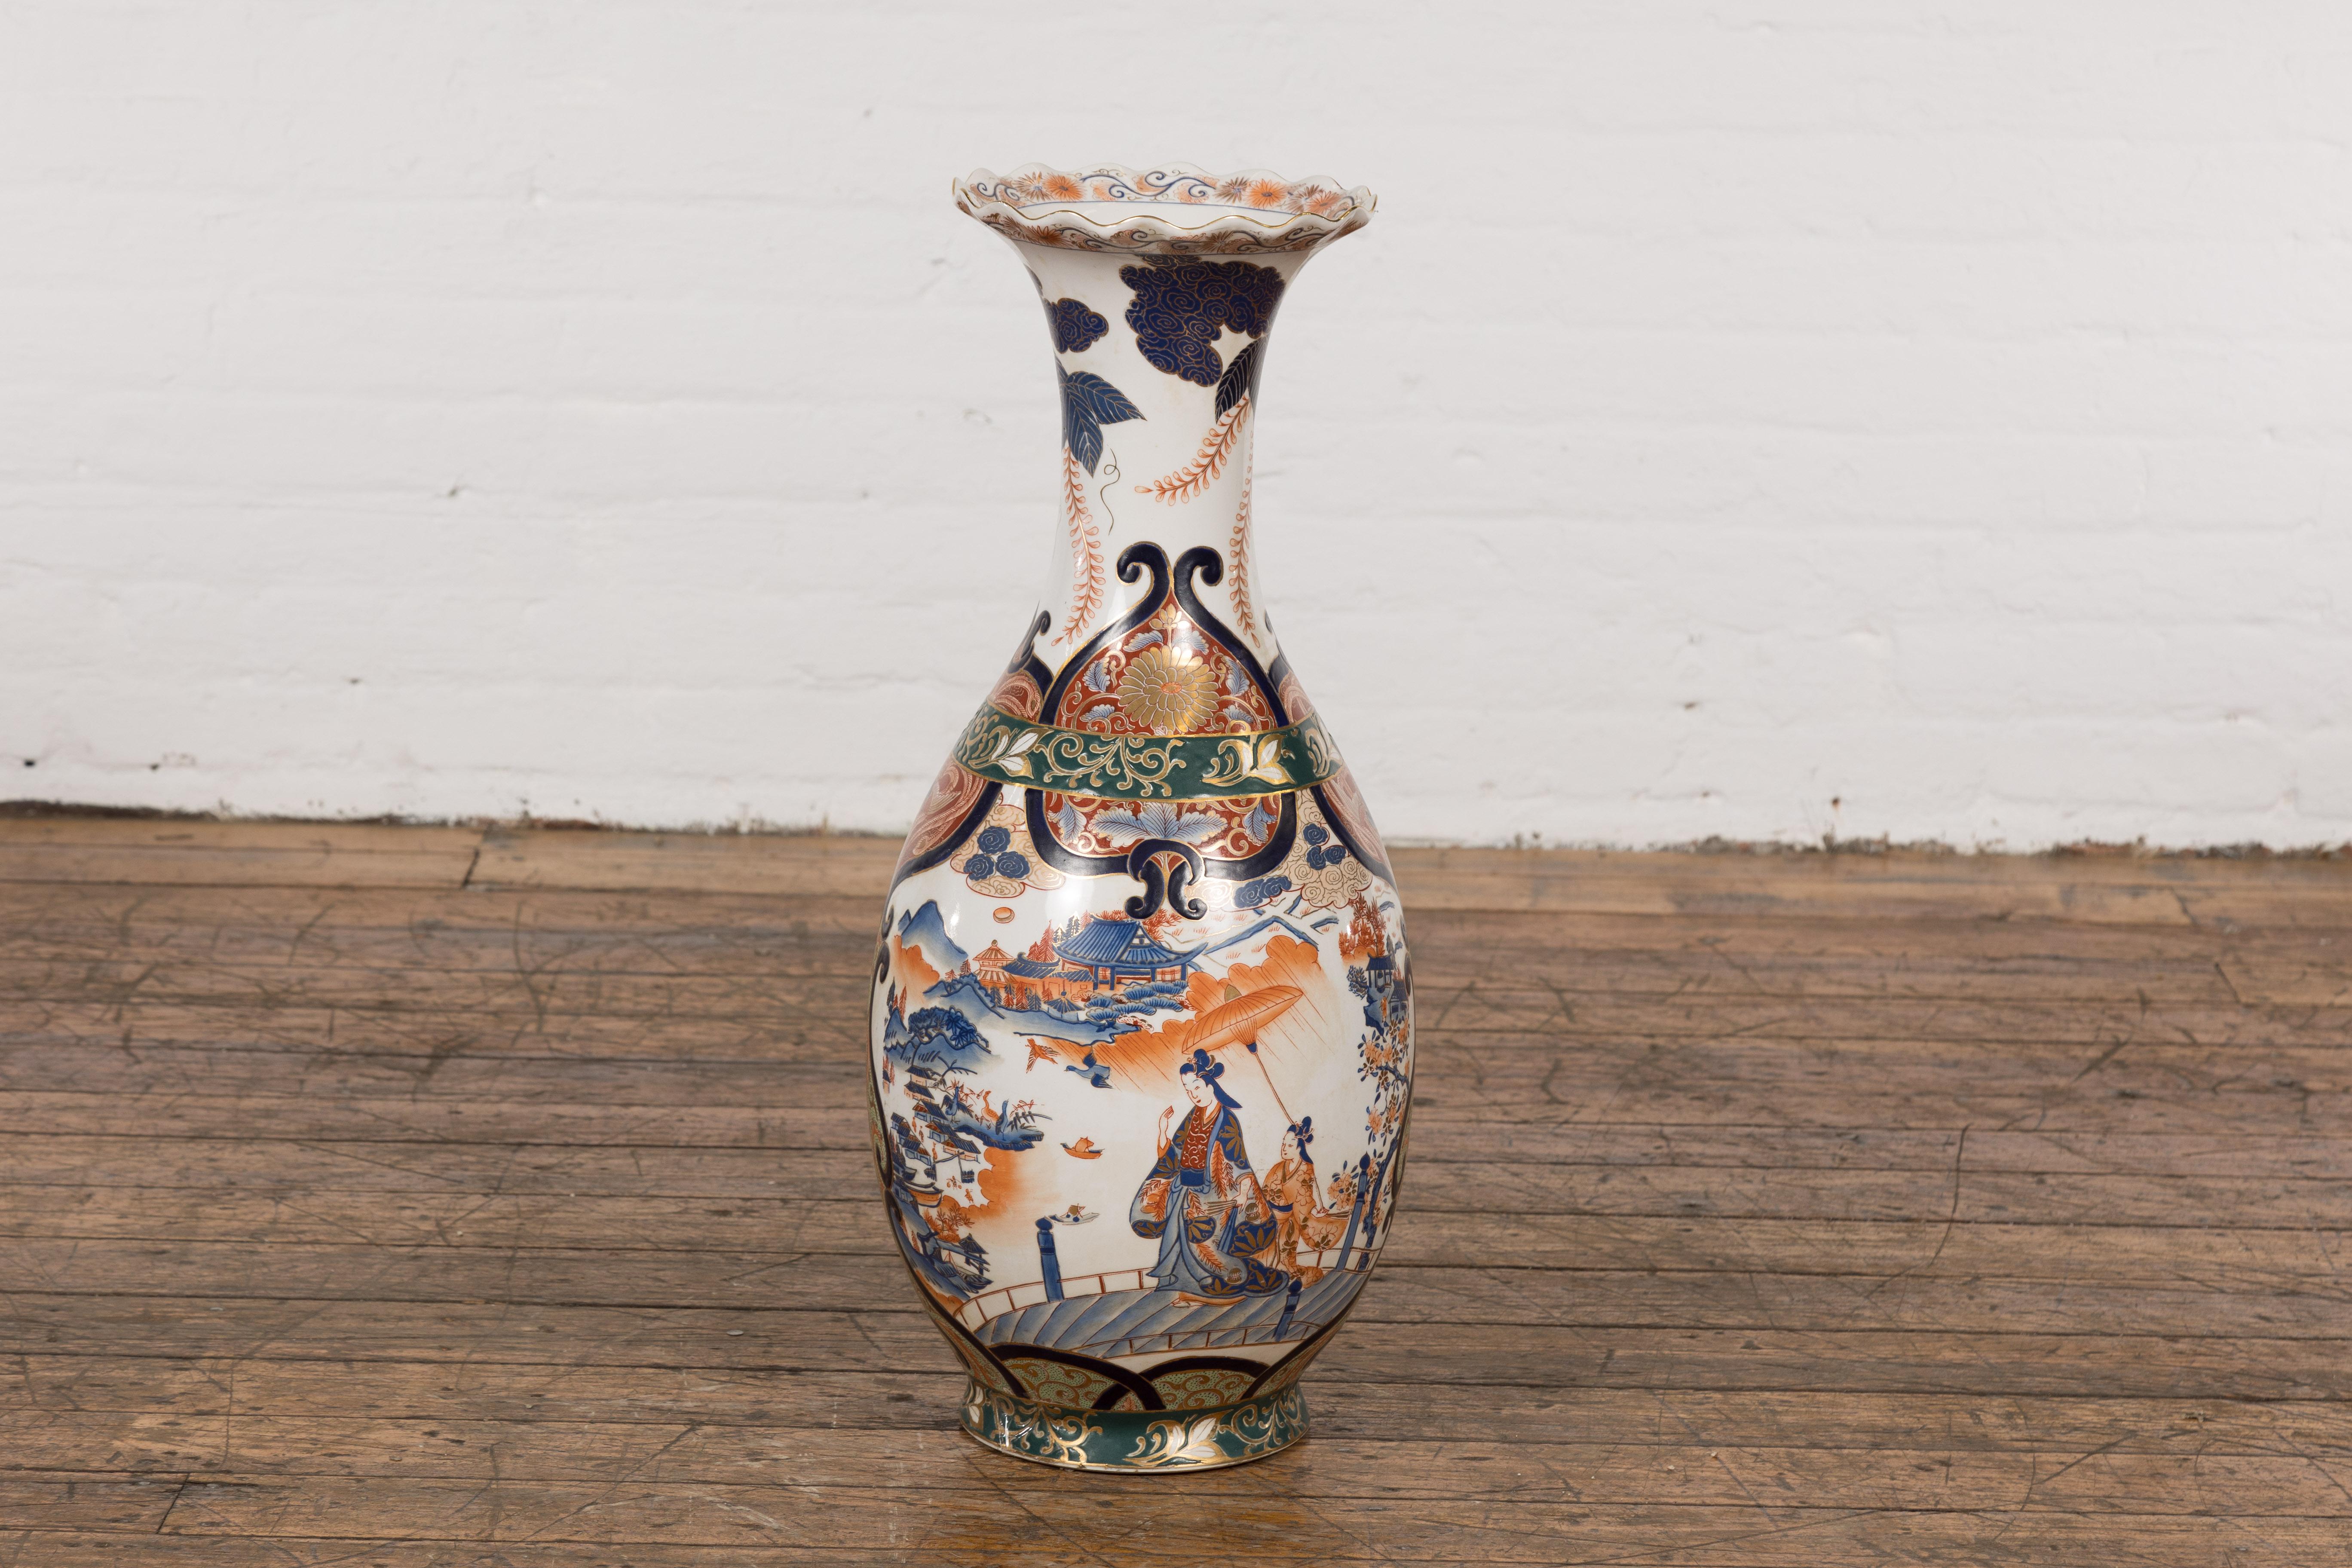 Vase d'autel vintage en porcelaine chinoise de style Imari, datant du milieu du 20e siècle, avec une sous-couche bleue, un sommet festonné, un décor orange, bleu et vert ainsi que d'élégantes dames, des architectures et des motifs de paysage. Ce